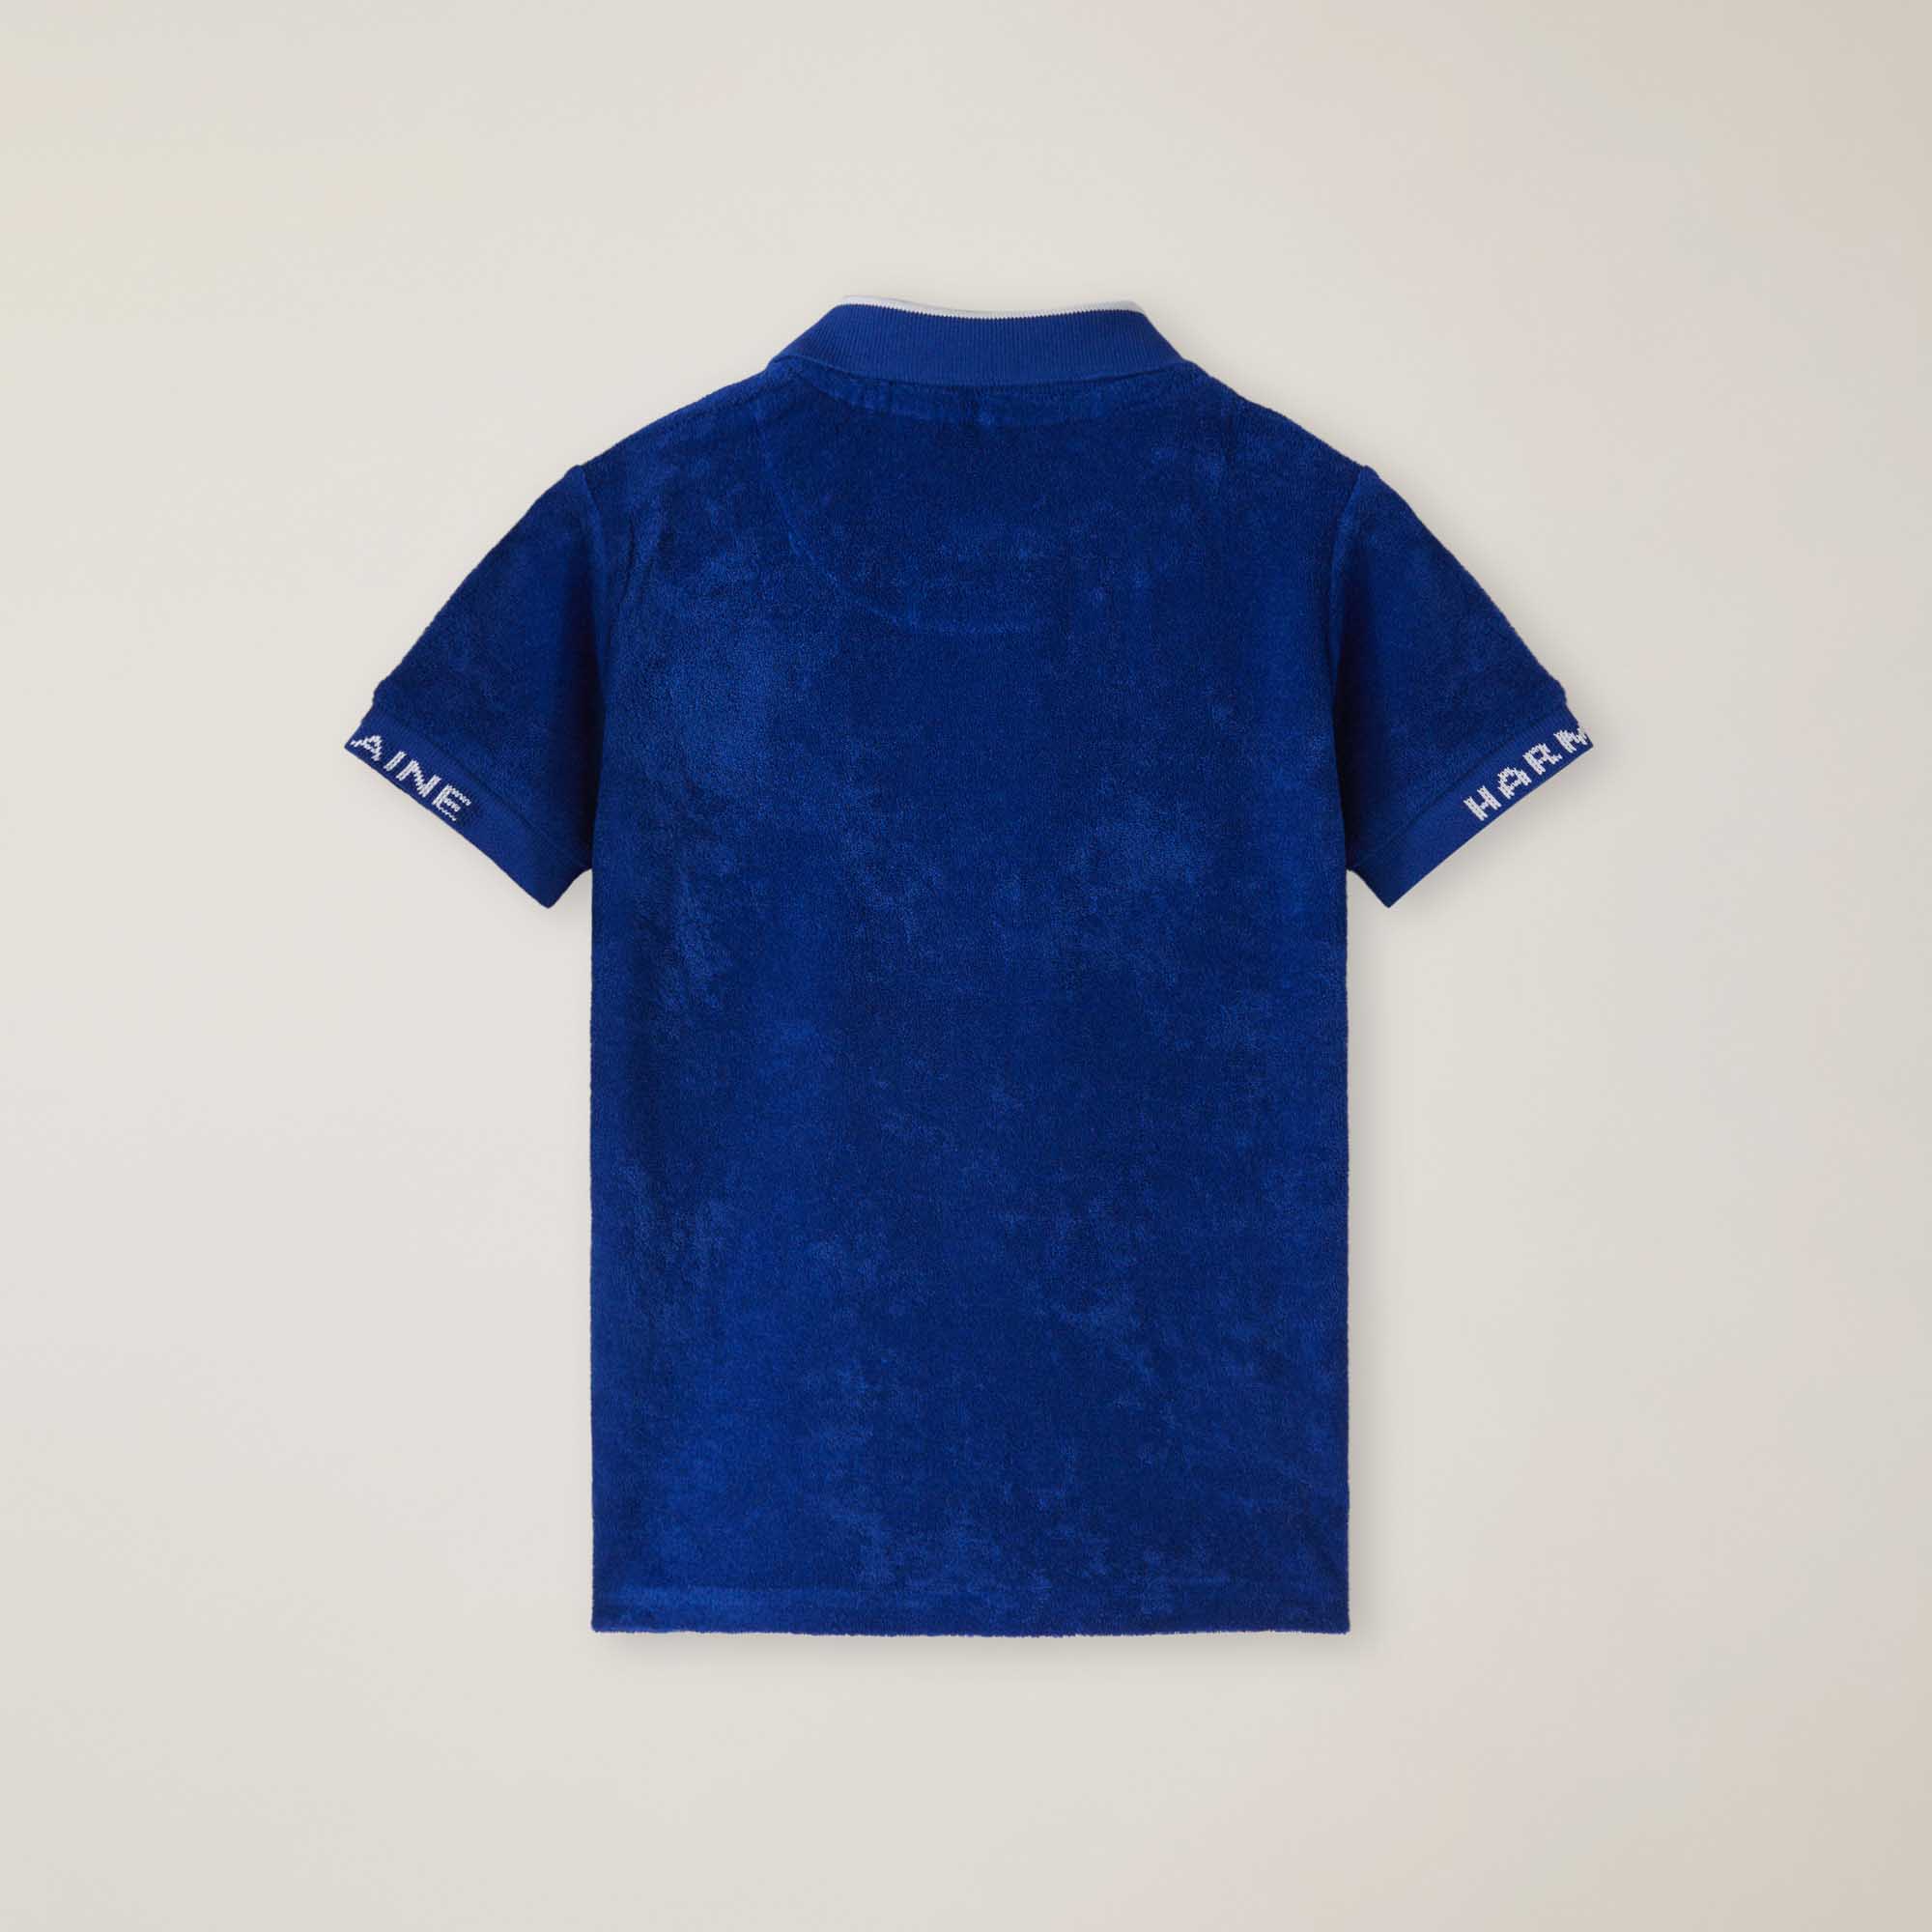 Poloshirt aus Gewebe mit Frottee-Effekt, ELEKTRISCH, large image number 1